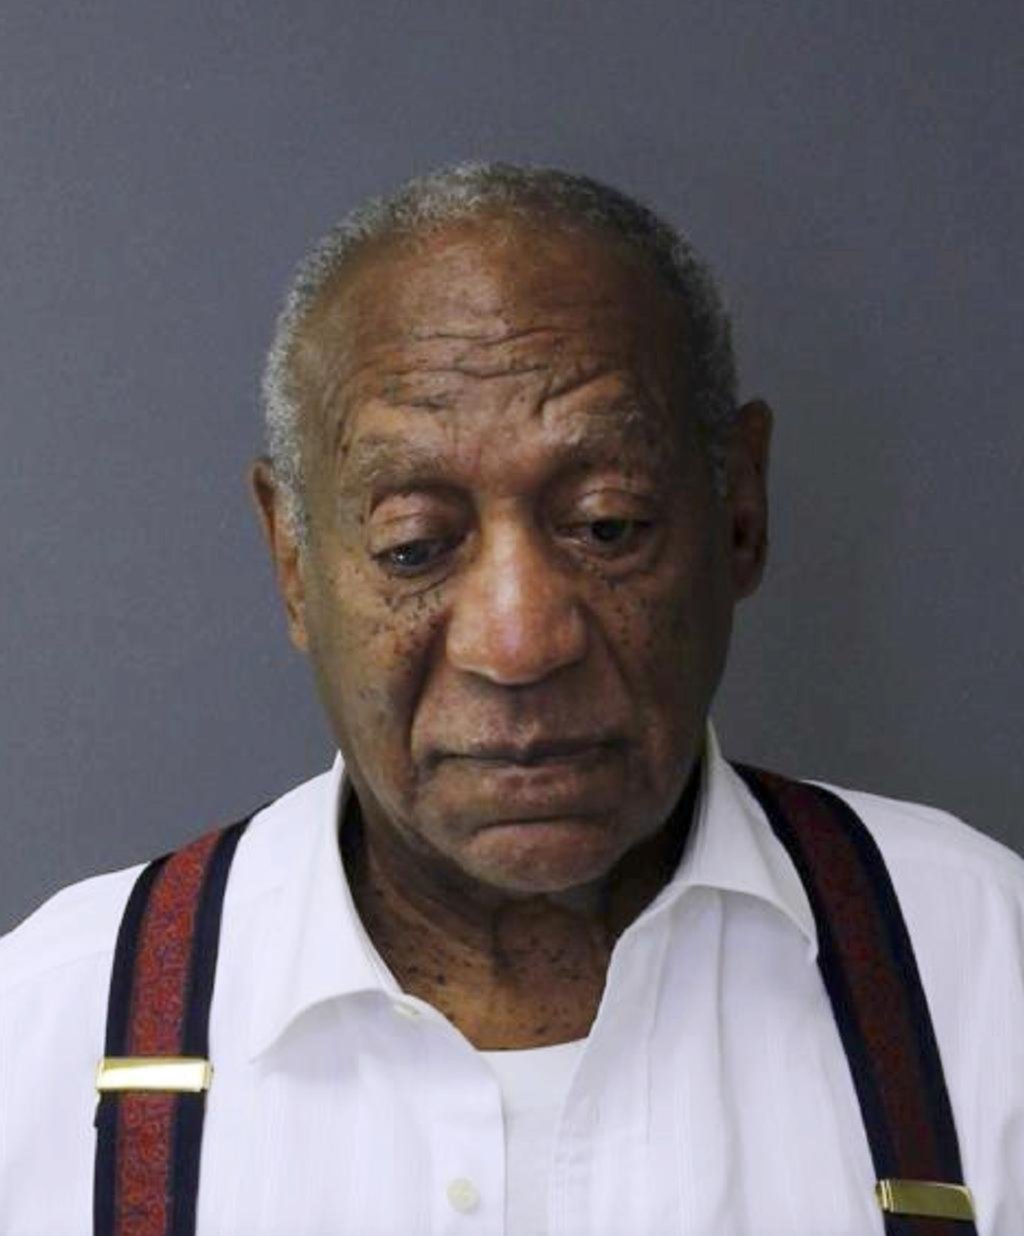 Descenso a los infiernos: de apacible padre de familia, a depredador sexual: la caída de Bill Cosby